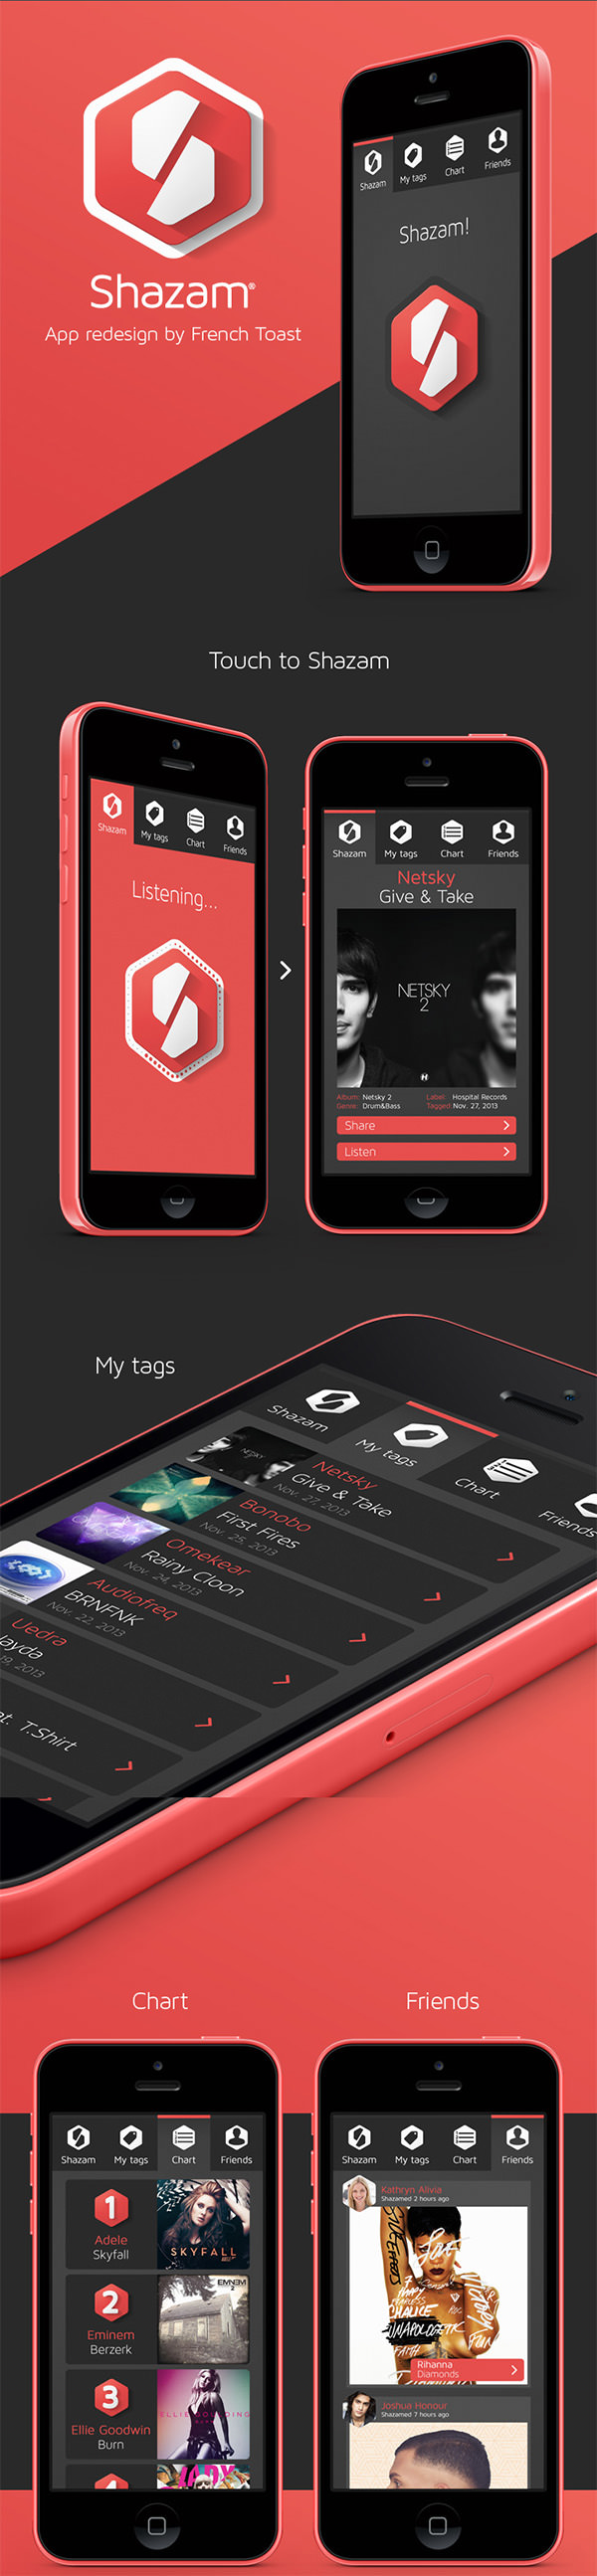 shazam-app-design-concept